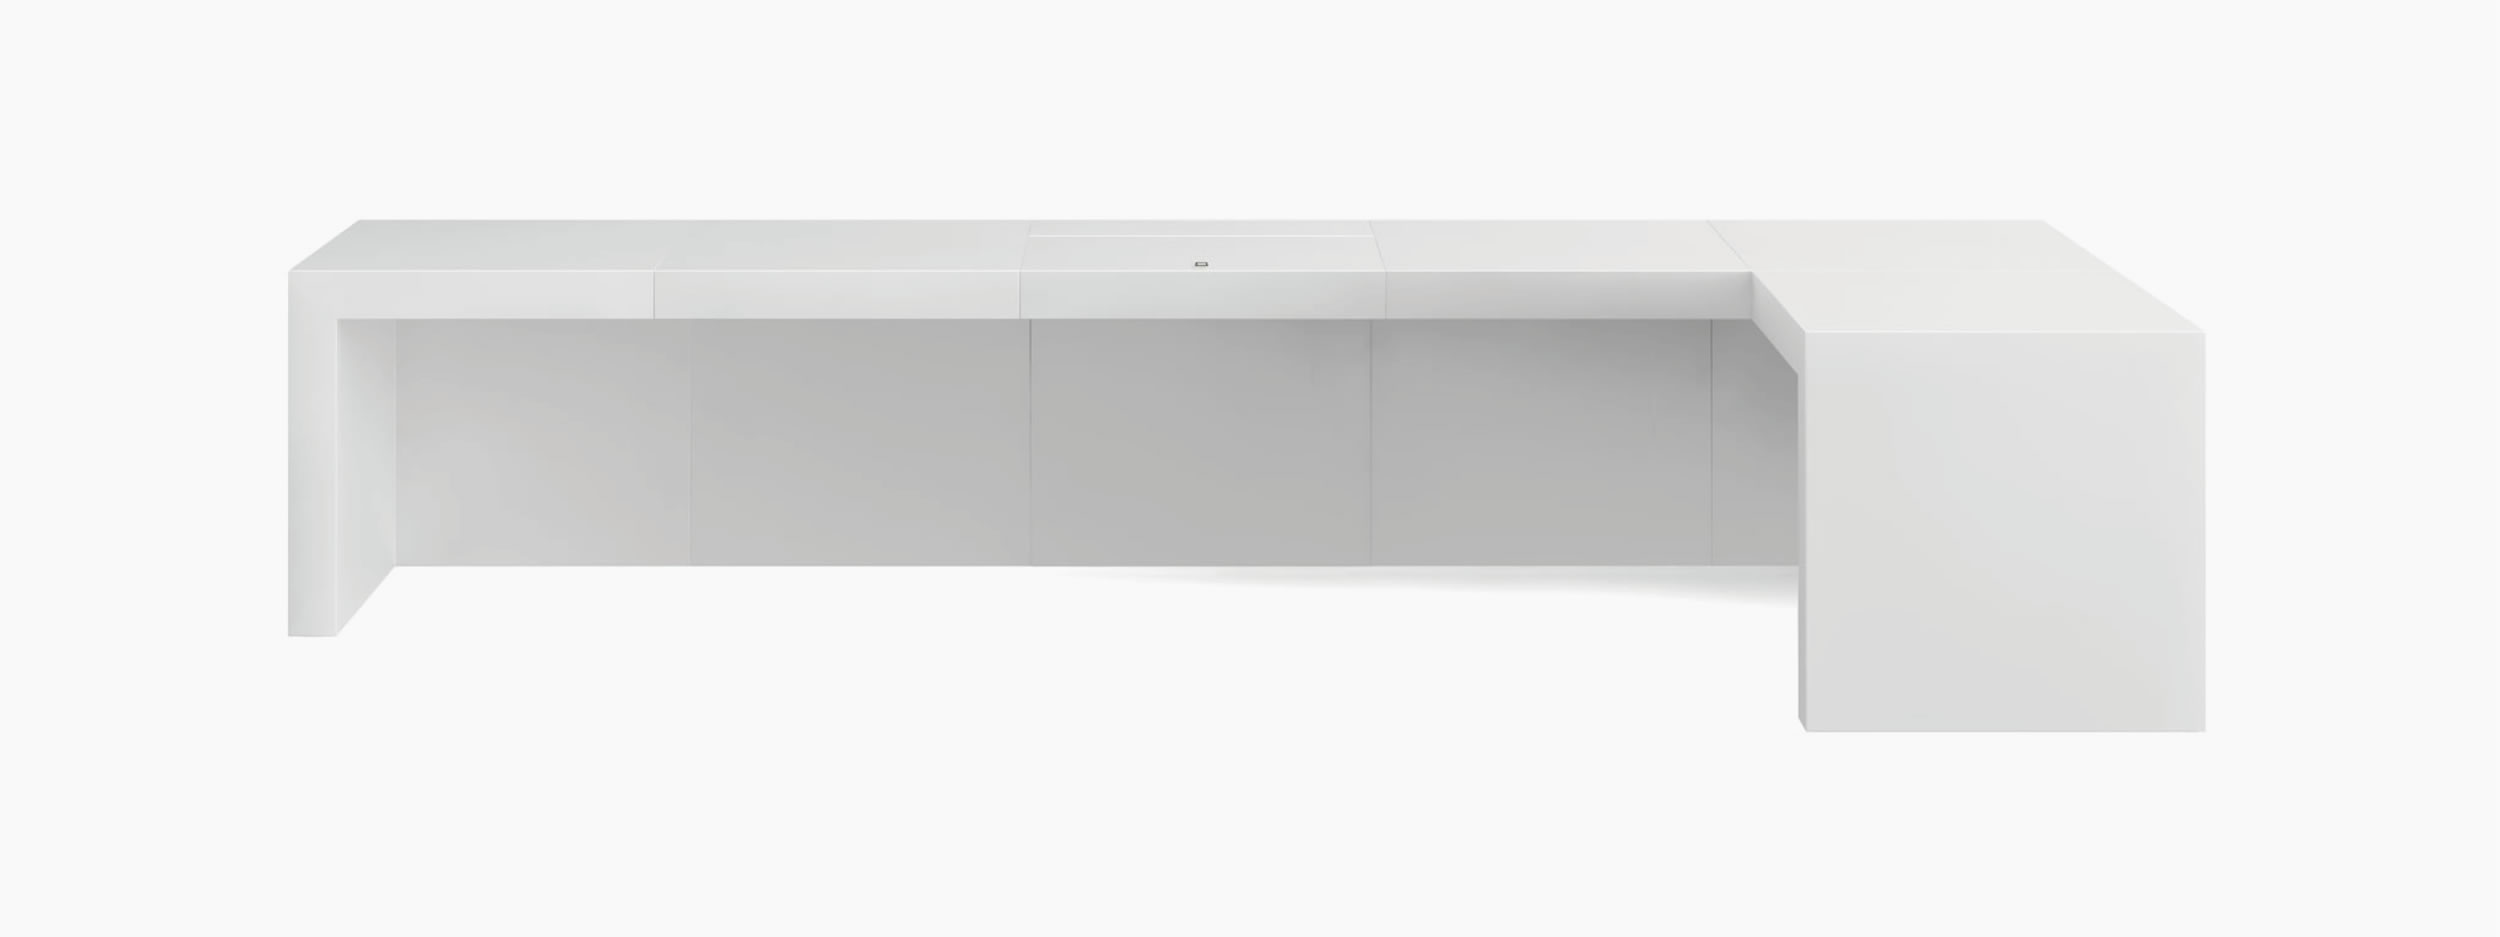 Schreibtisch wuerfel weiss moderndesign Chefzimmer interior boom Schreibtische FS 92 FELIX SCHWAKE RECHTECK